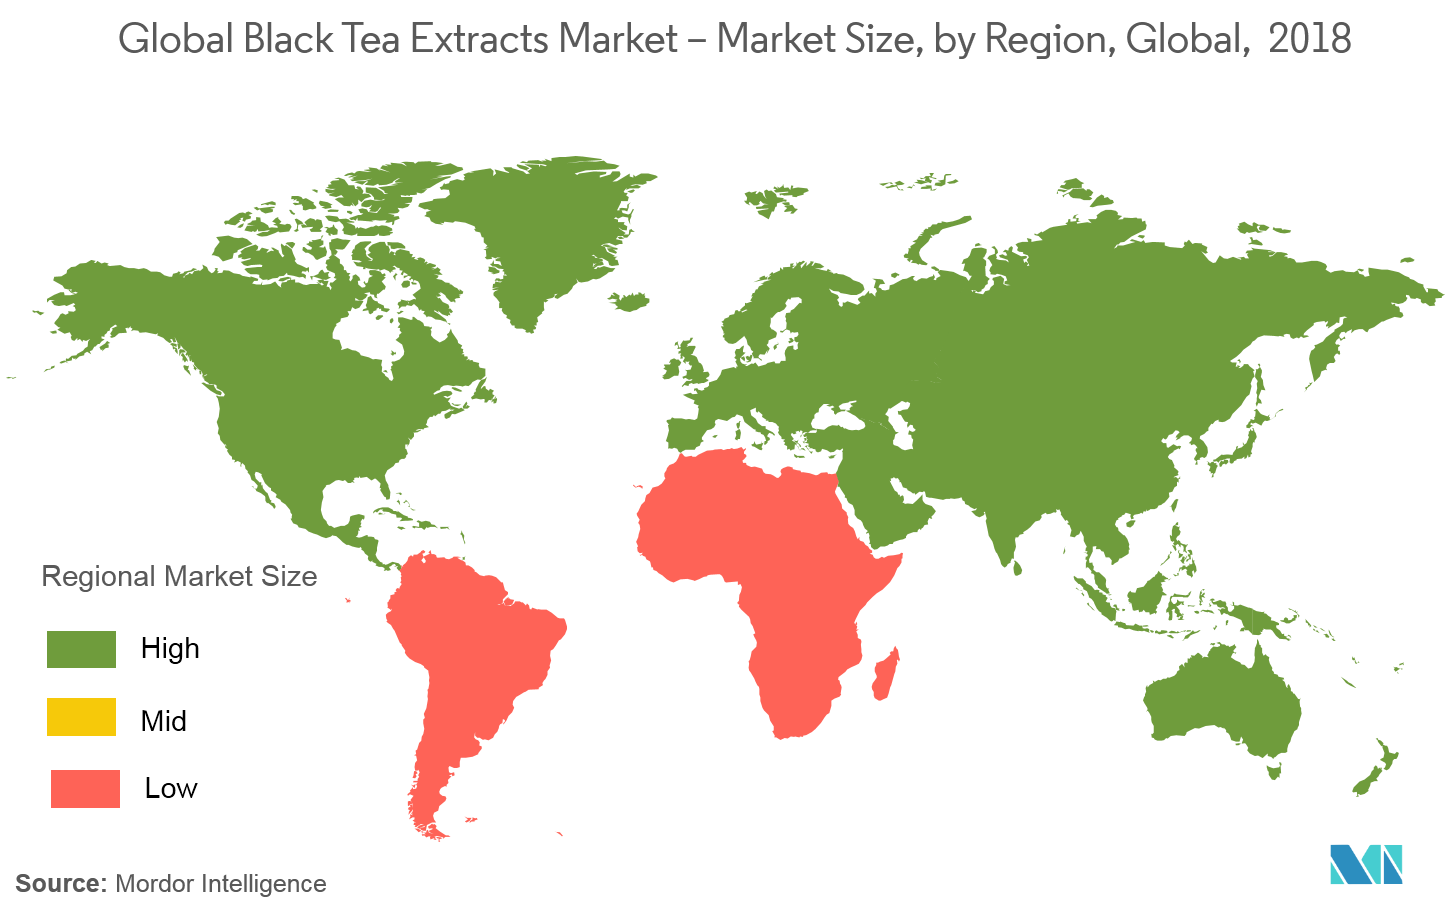 Markt für Schwarztee-Extrakte – Marktgröße, nach Regionen, weltweit, 2018